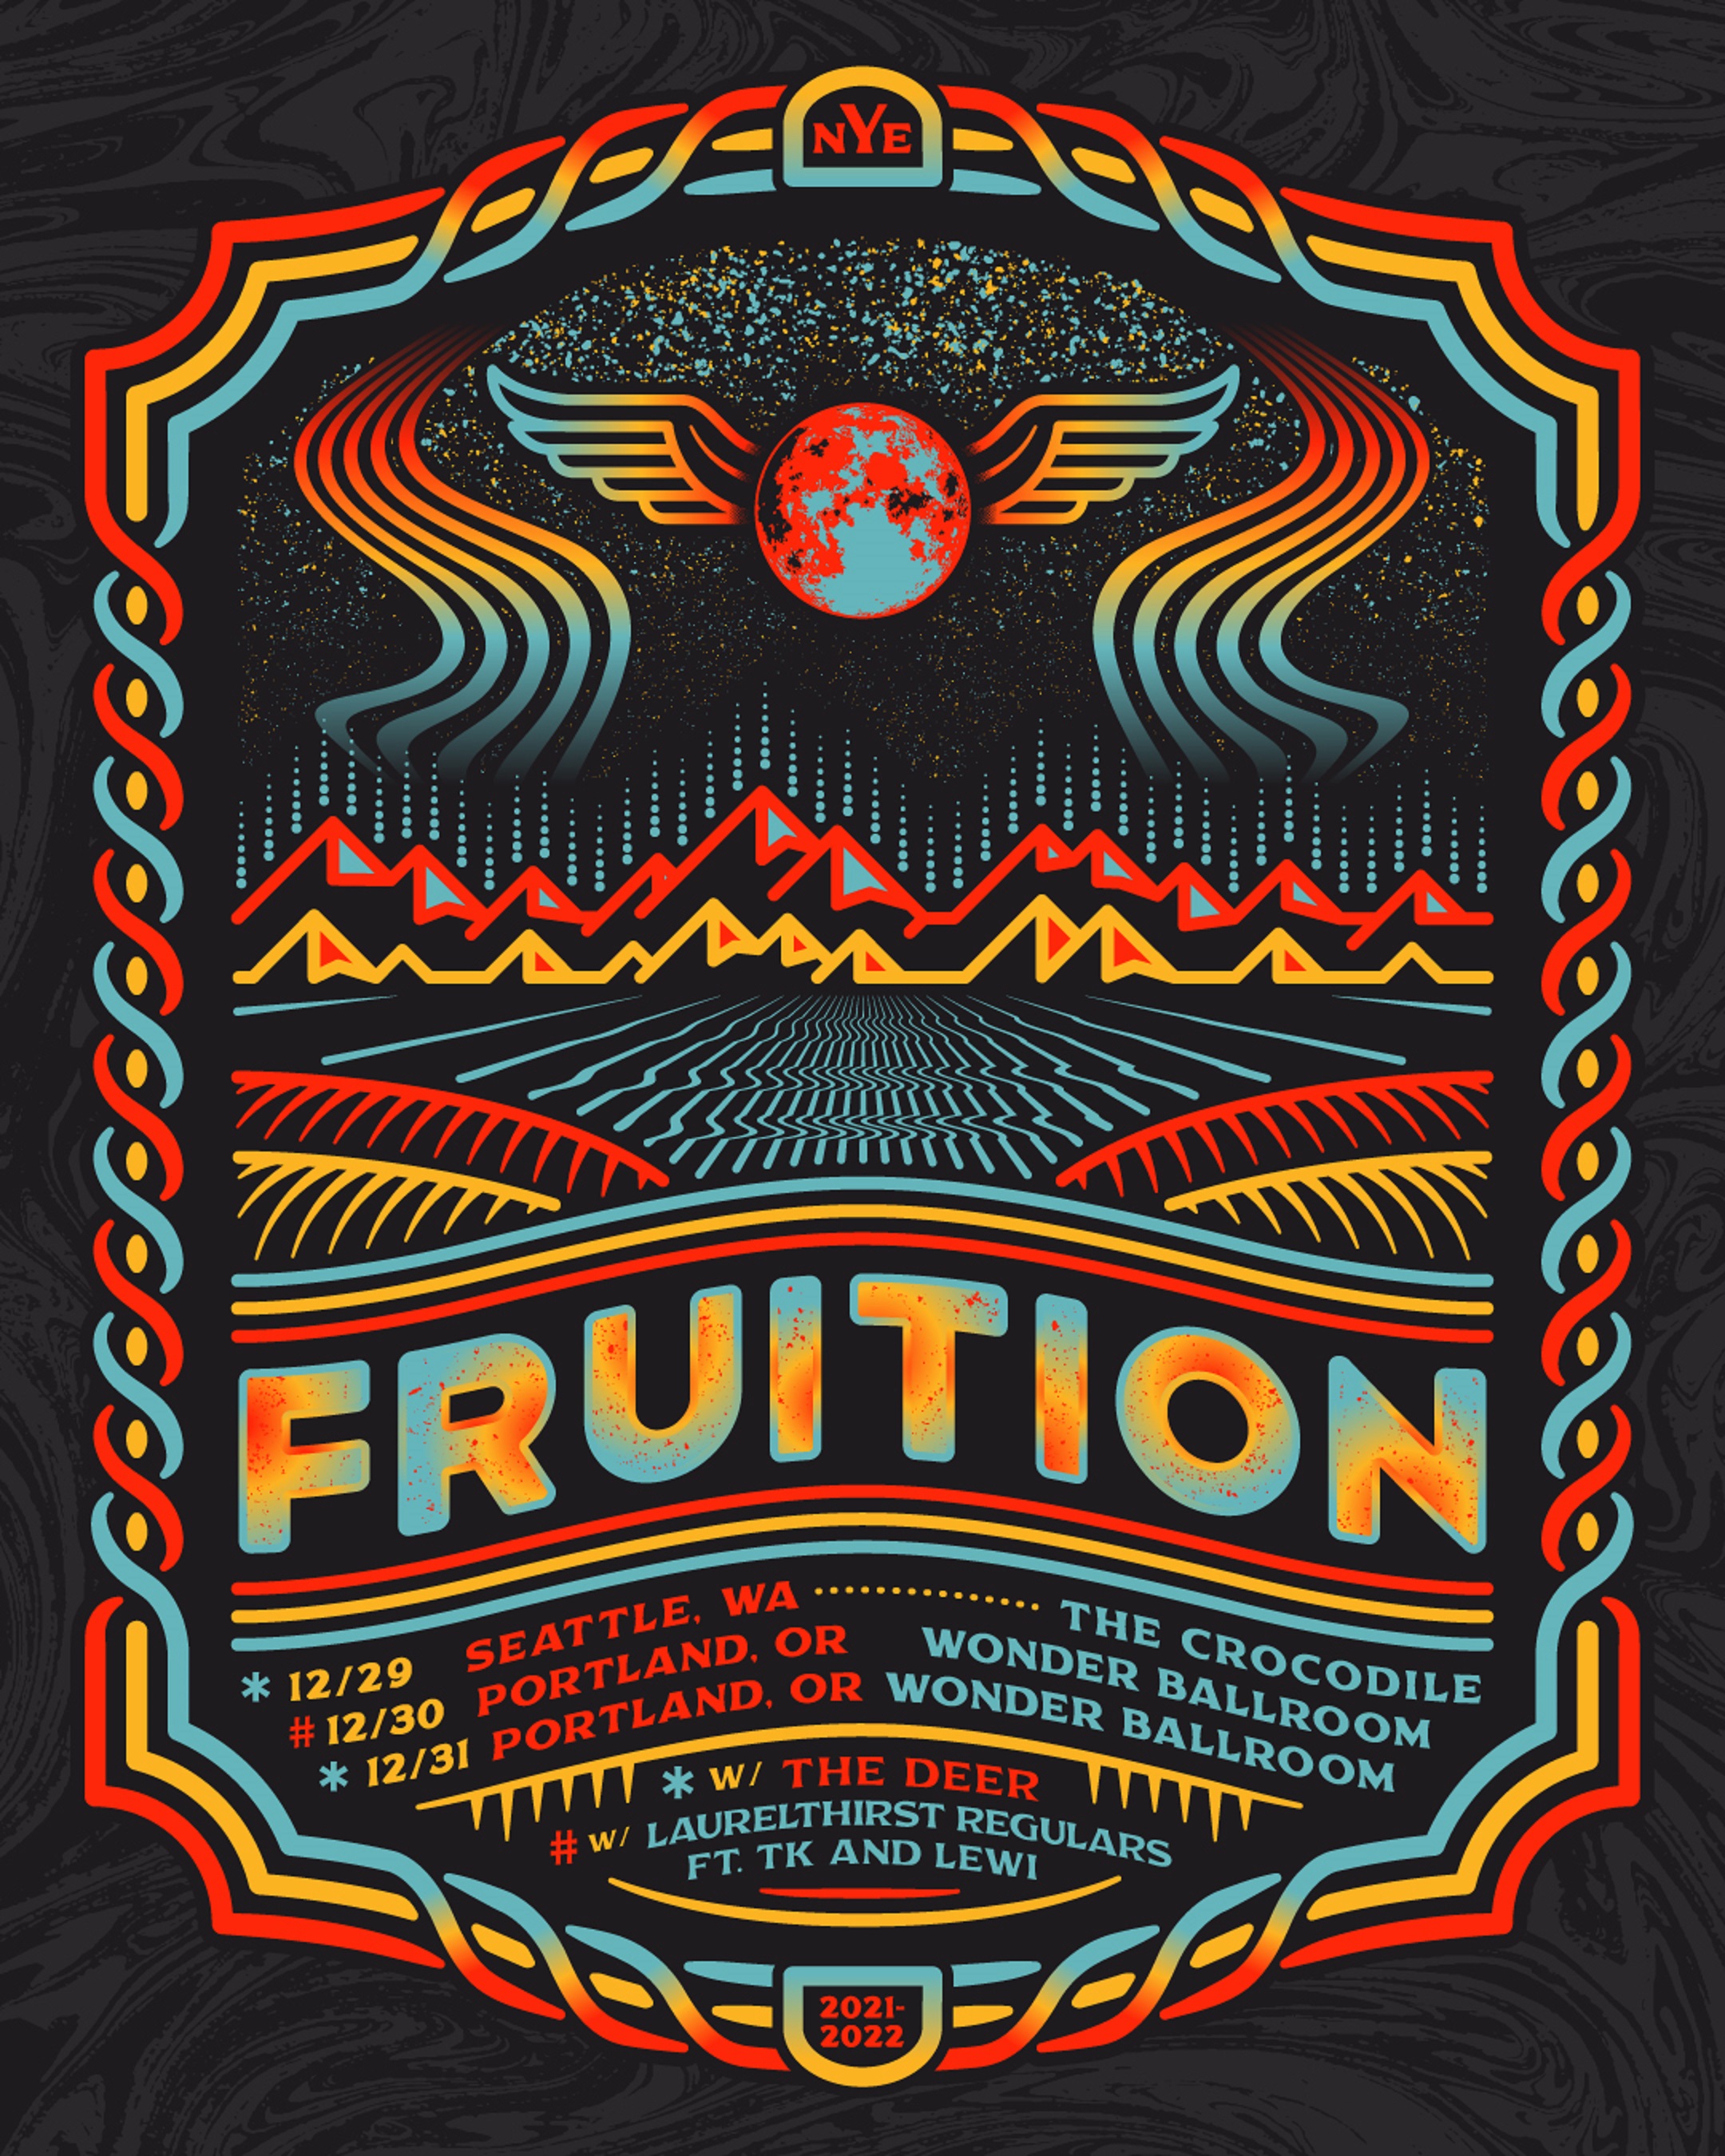 Fruition Announces 3 Night NYE Celebration